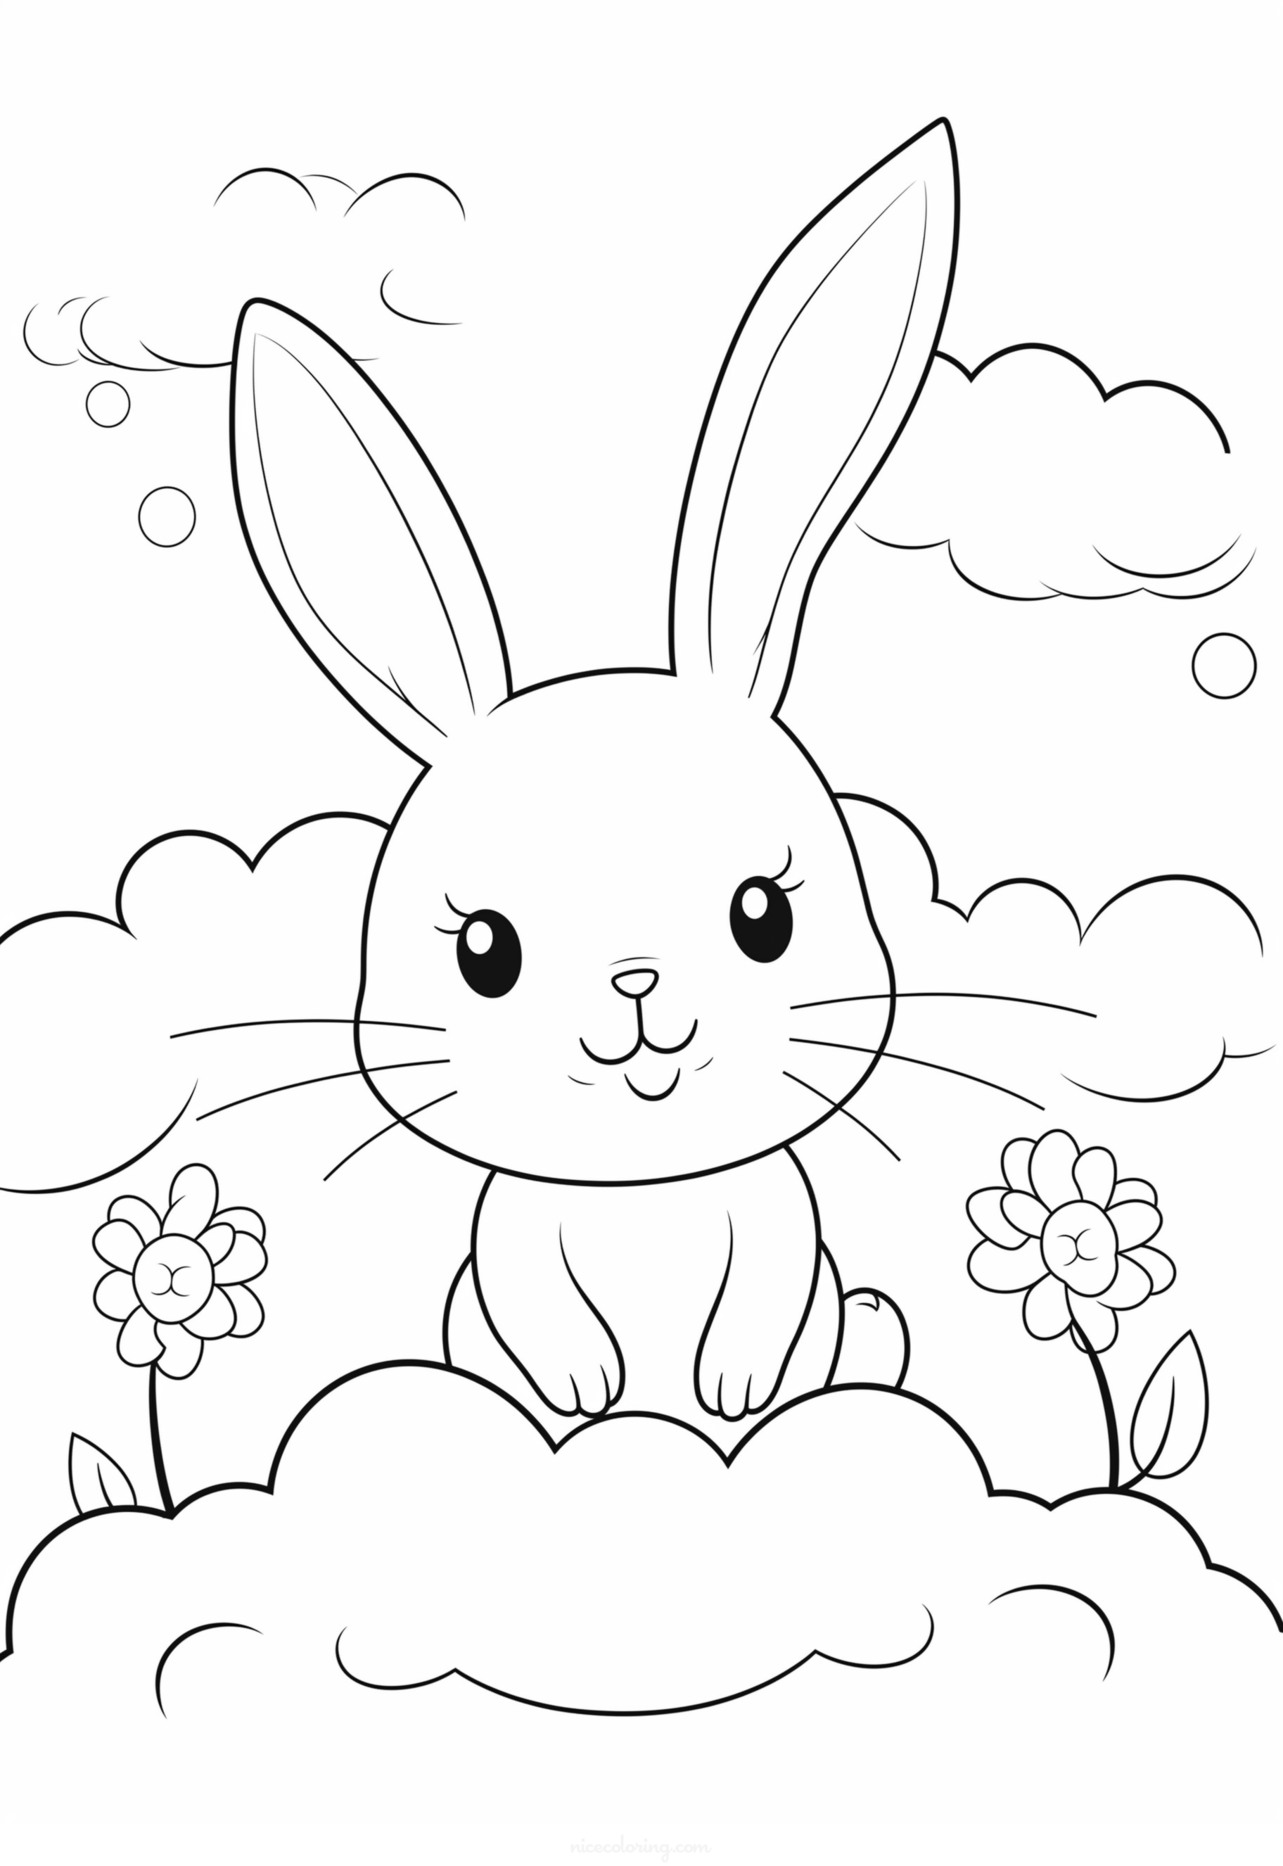 꽃으로 둘러싸인 귀여운 토끼